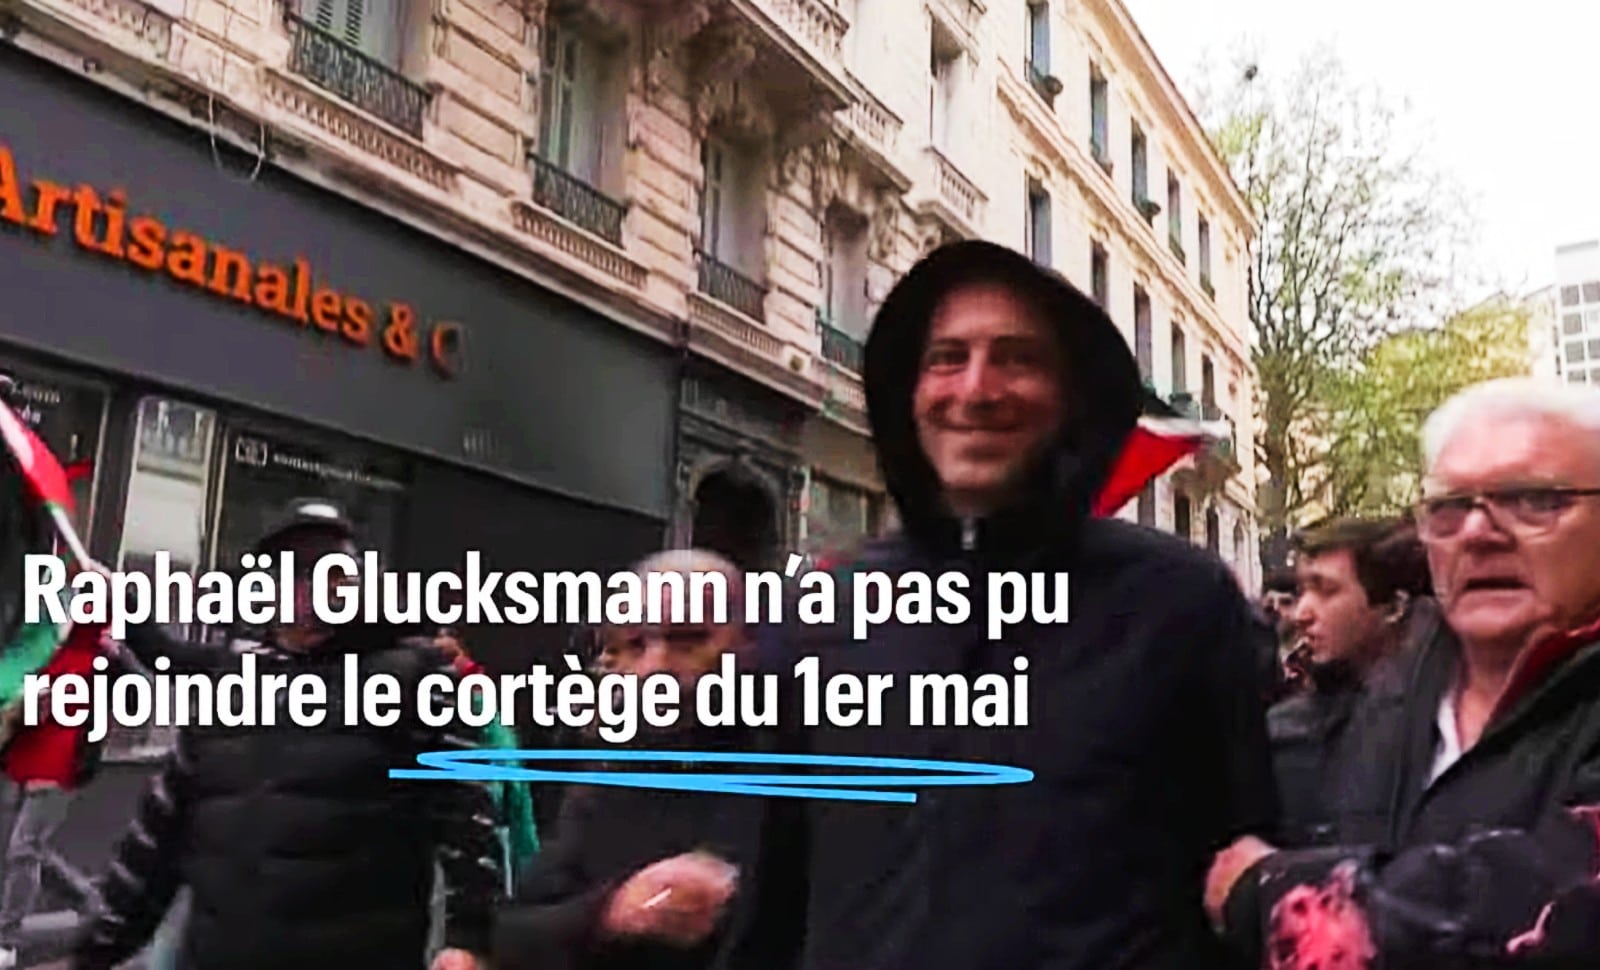 Affaire Glucksmann/Saint-Etienne: la gauche mélenchoniste est responsable de la brutalisation de notre vie politique